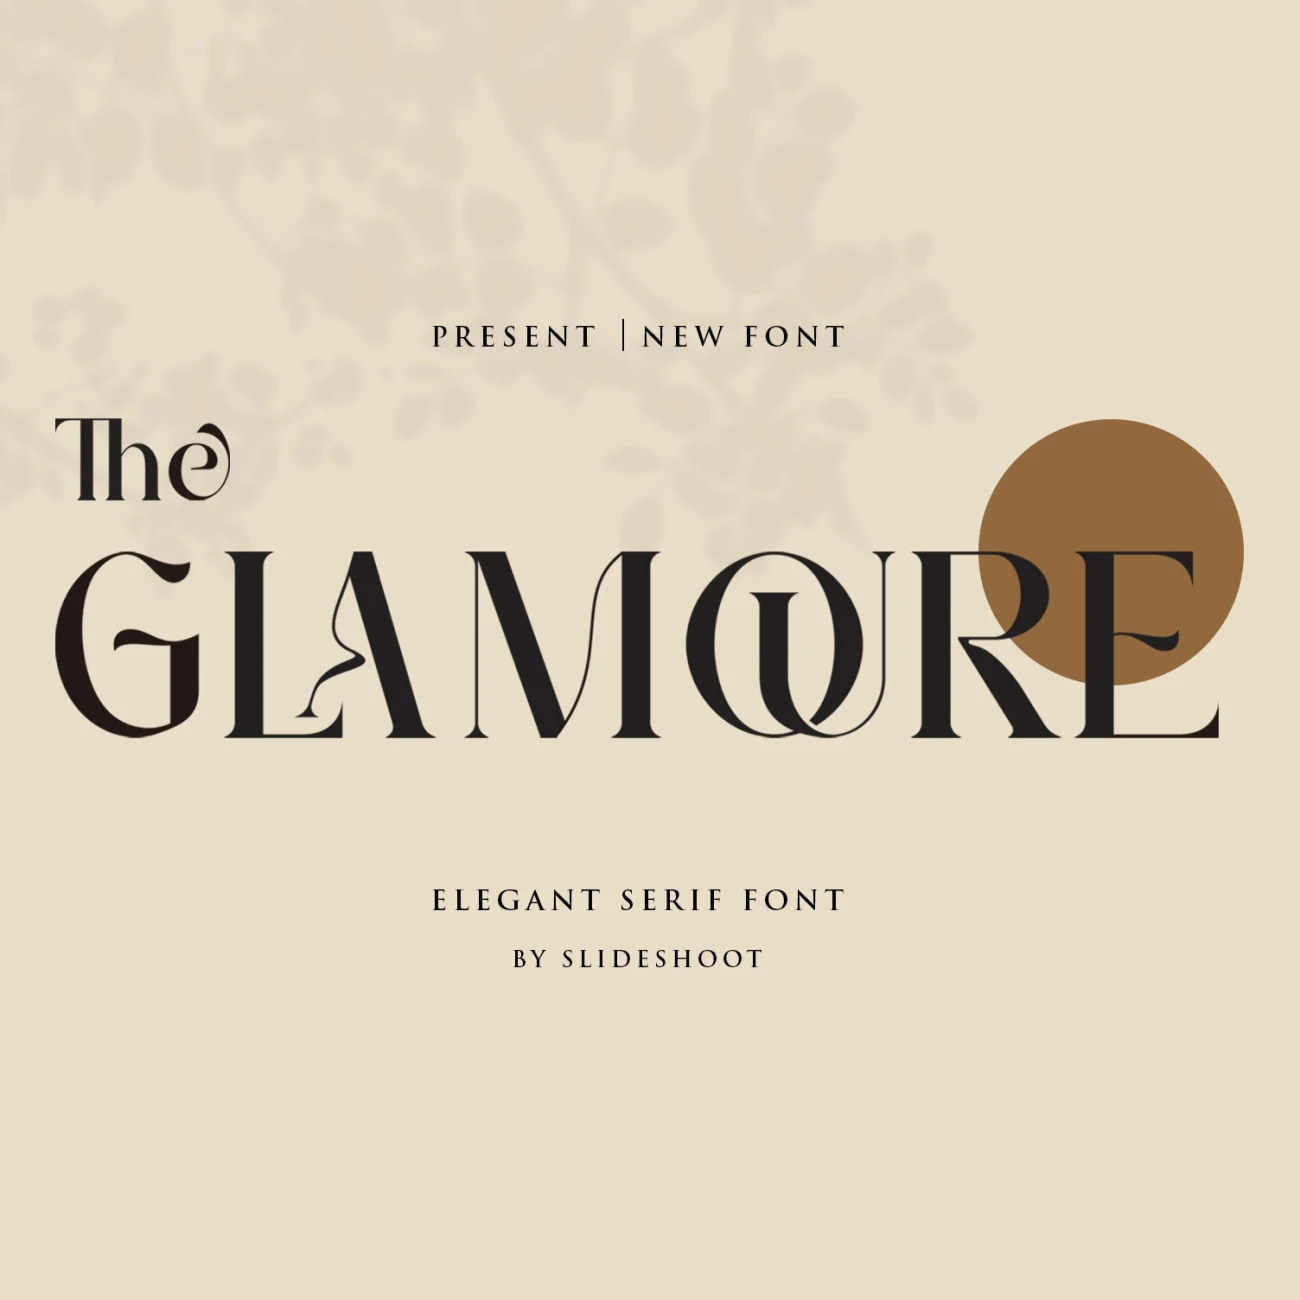 流畅、优雅和时尚的衬线英文字体 The Glamoure Serif缩略图到位啦UI